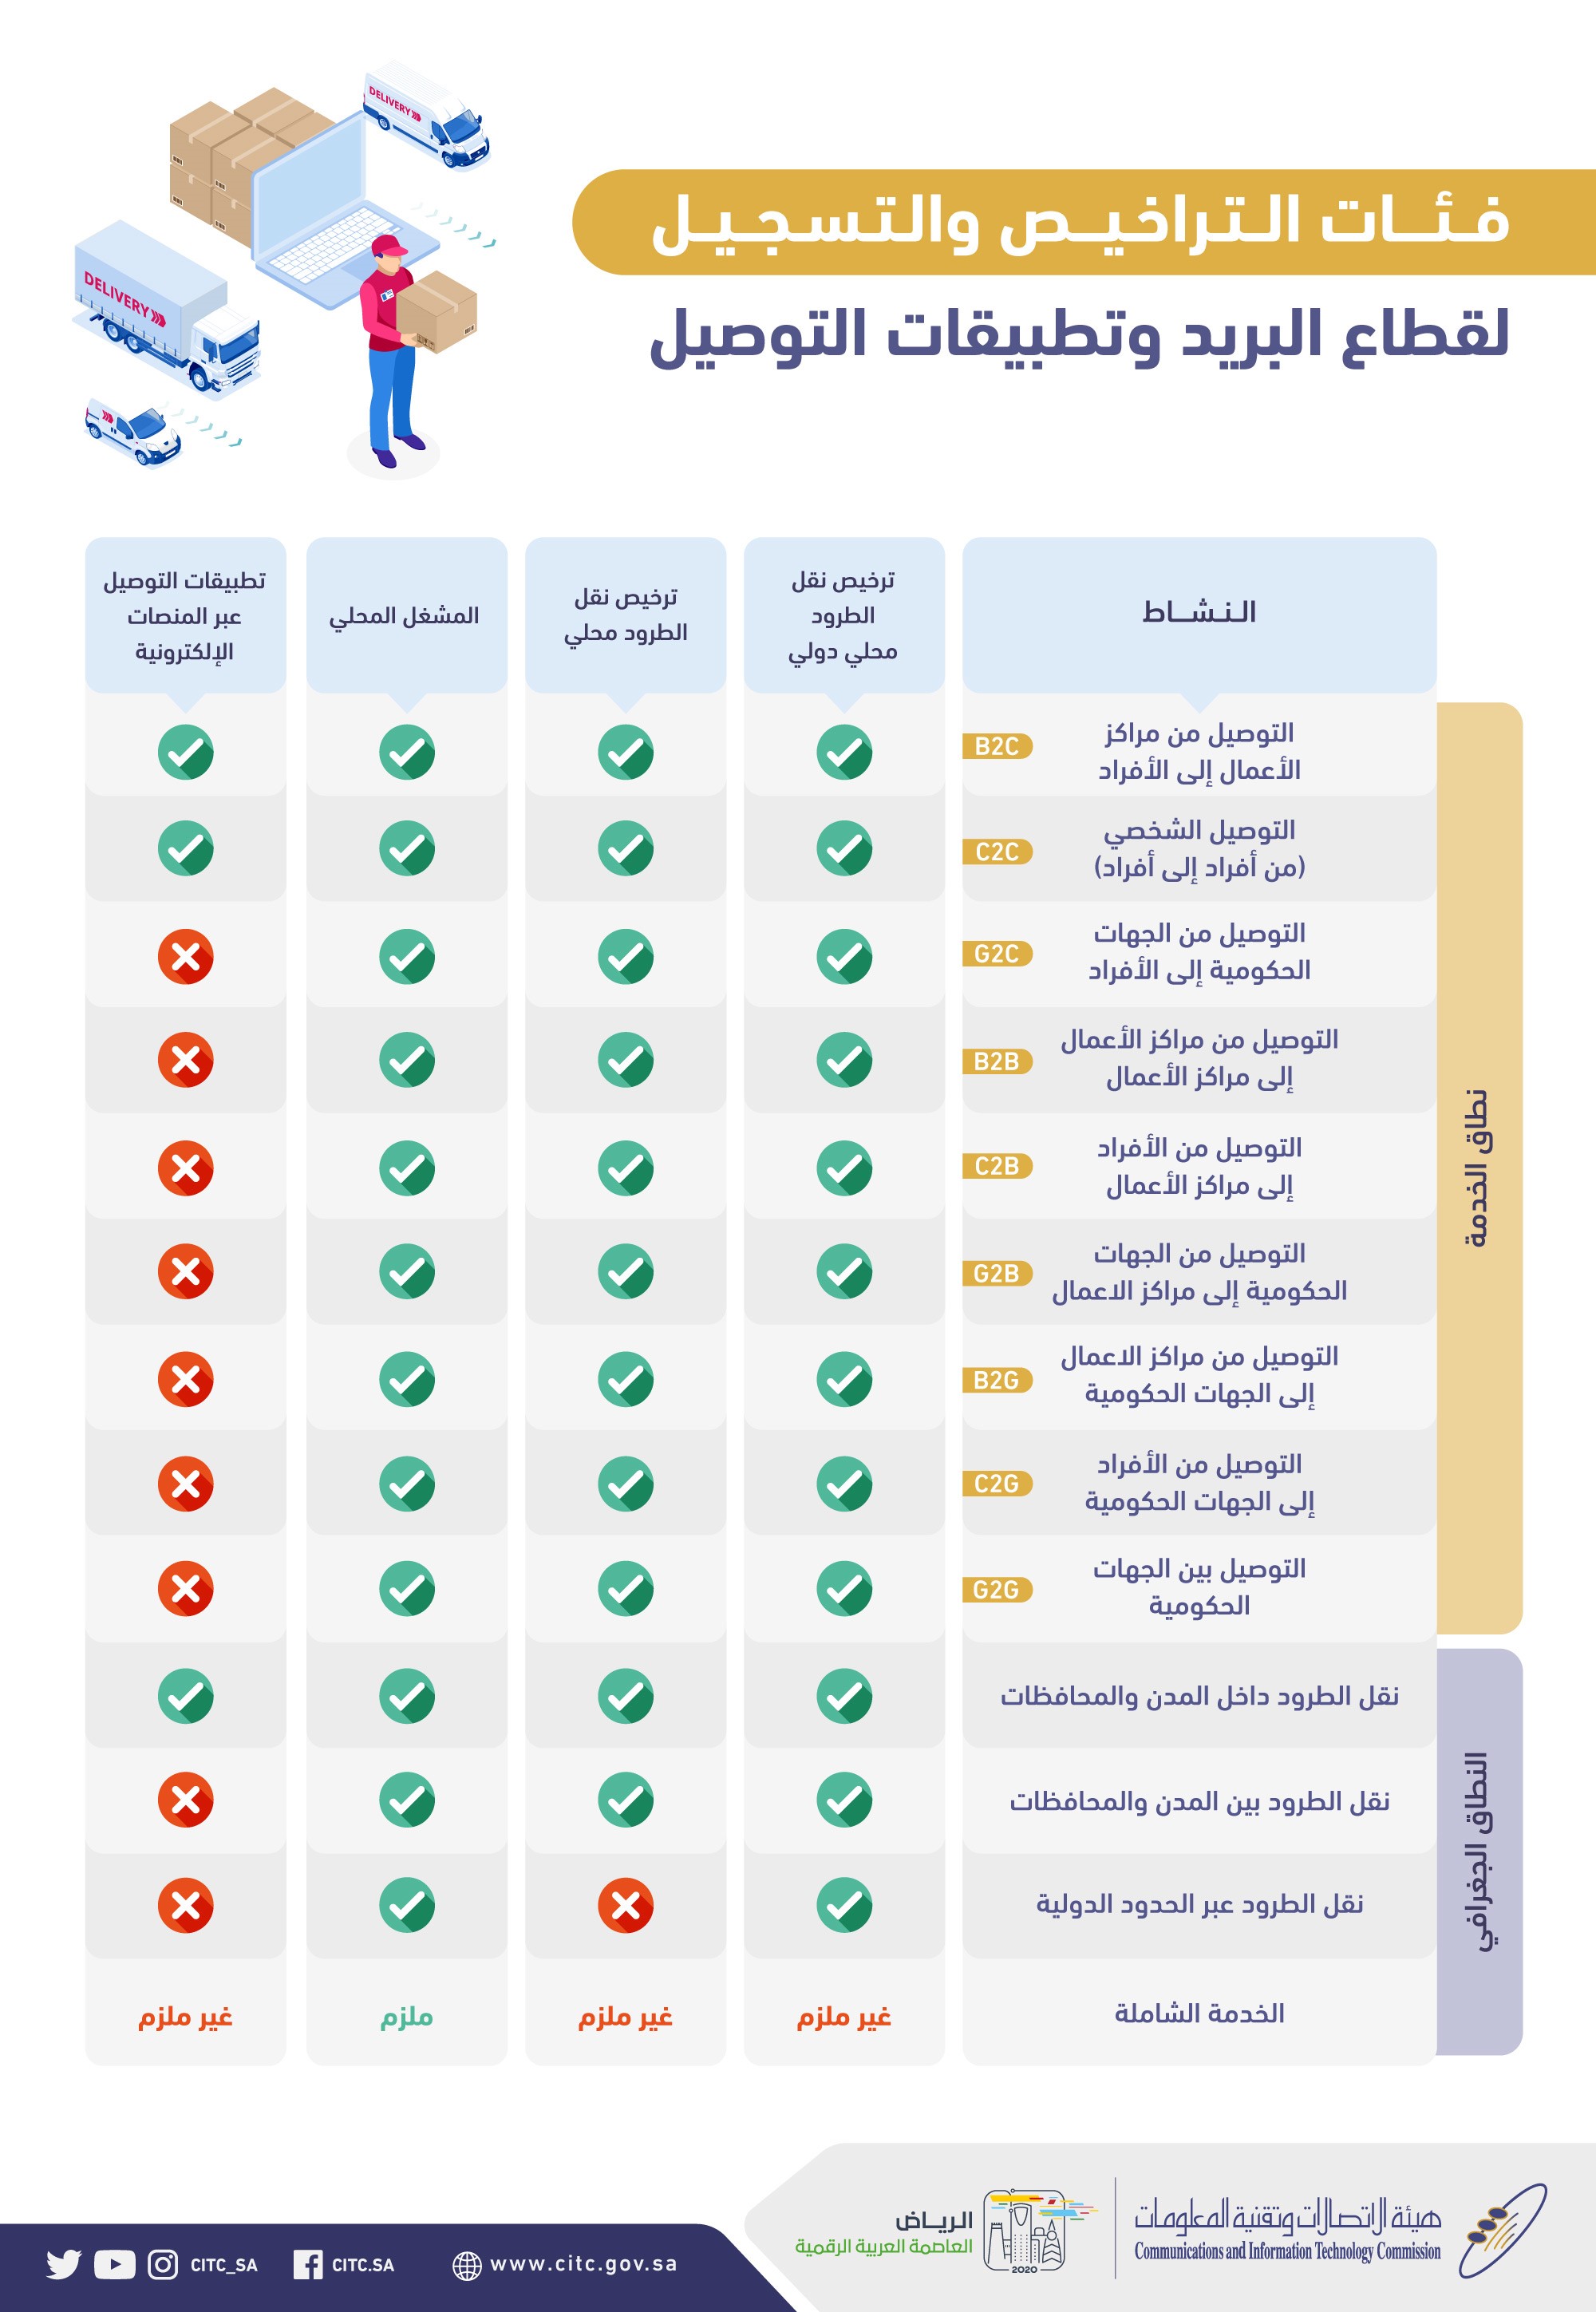 هيئة الاتصالات السعودية ت رخص لـ 6 شركات جديدة تقديم خدمات نقل الطرود معلومات مباشر